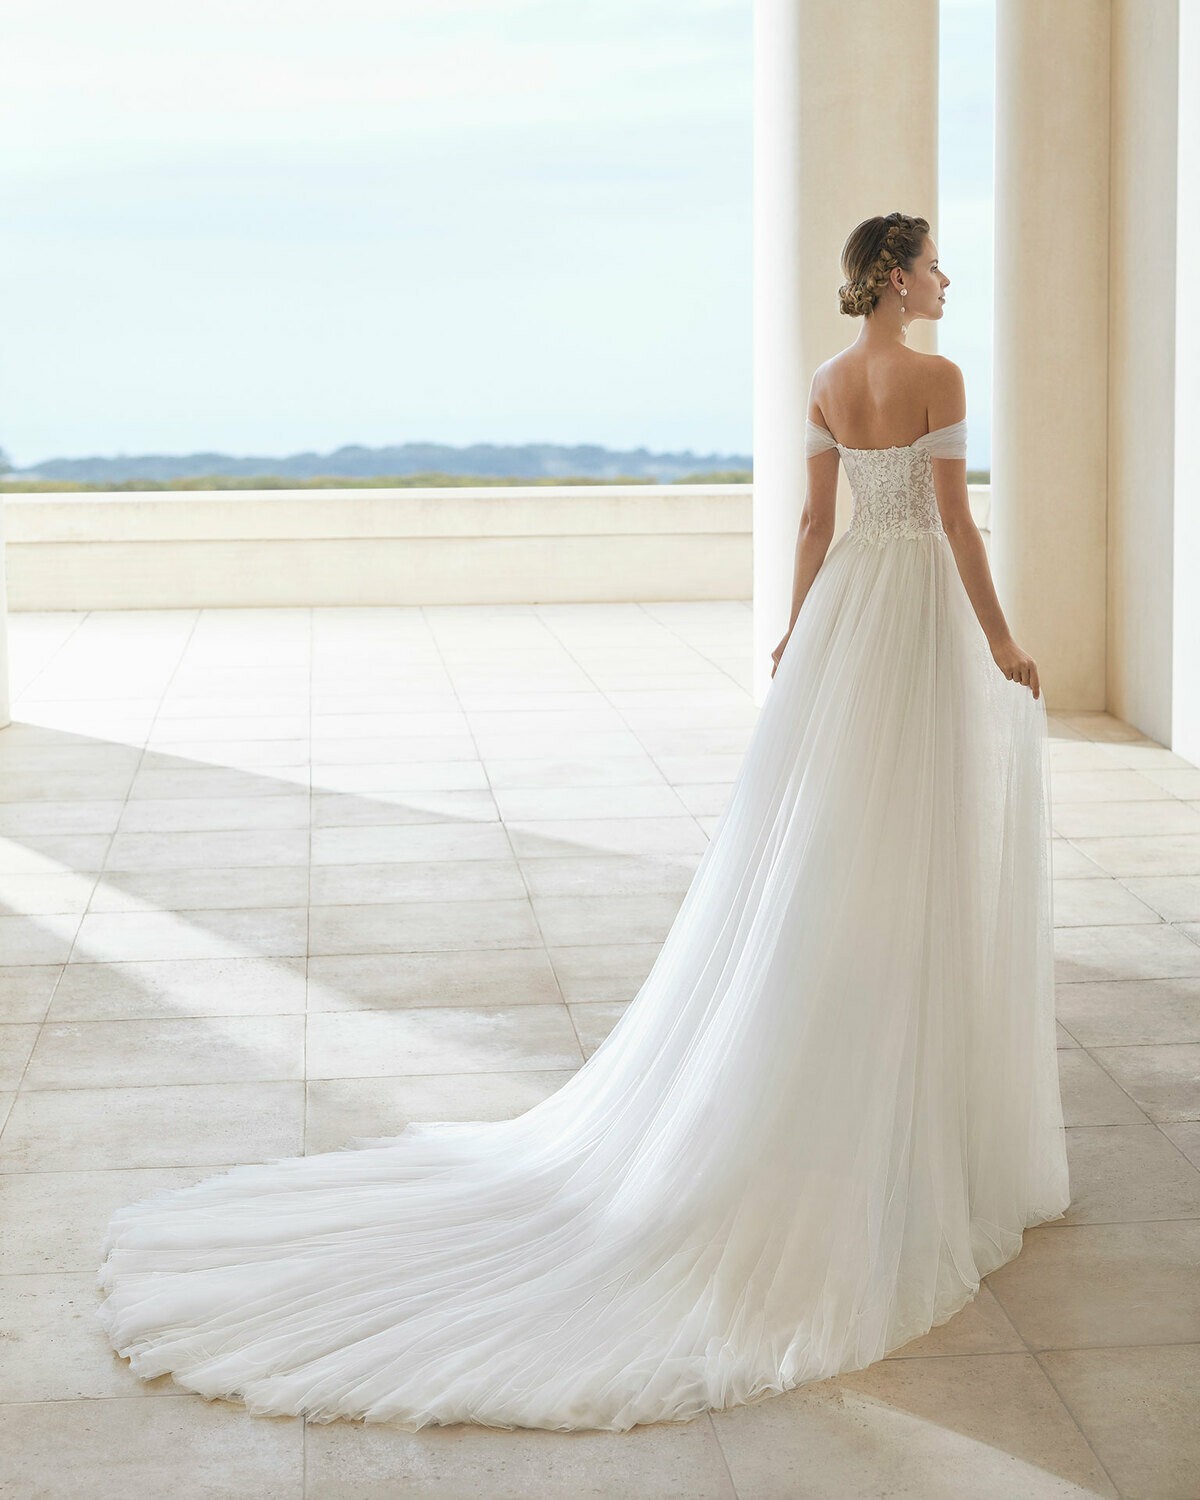 SANTELLA - abito da sposa collezione 2020 - Rosa Clarà Couture